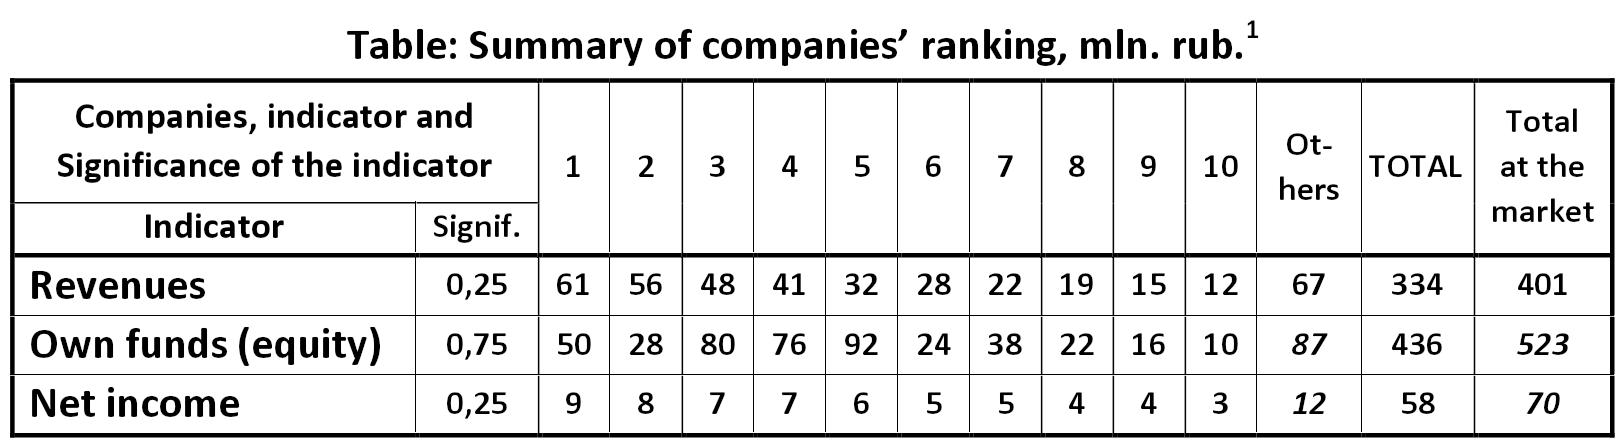 Table: Summary of companies ranking, mln. rub. [Alexander Shemetev]